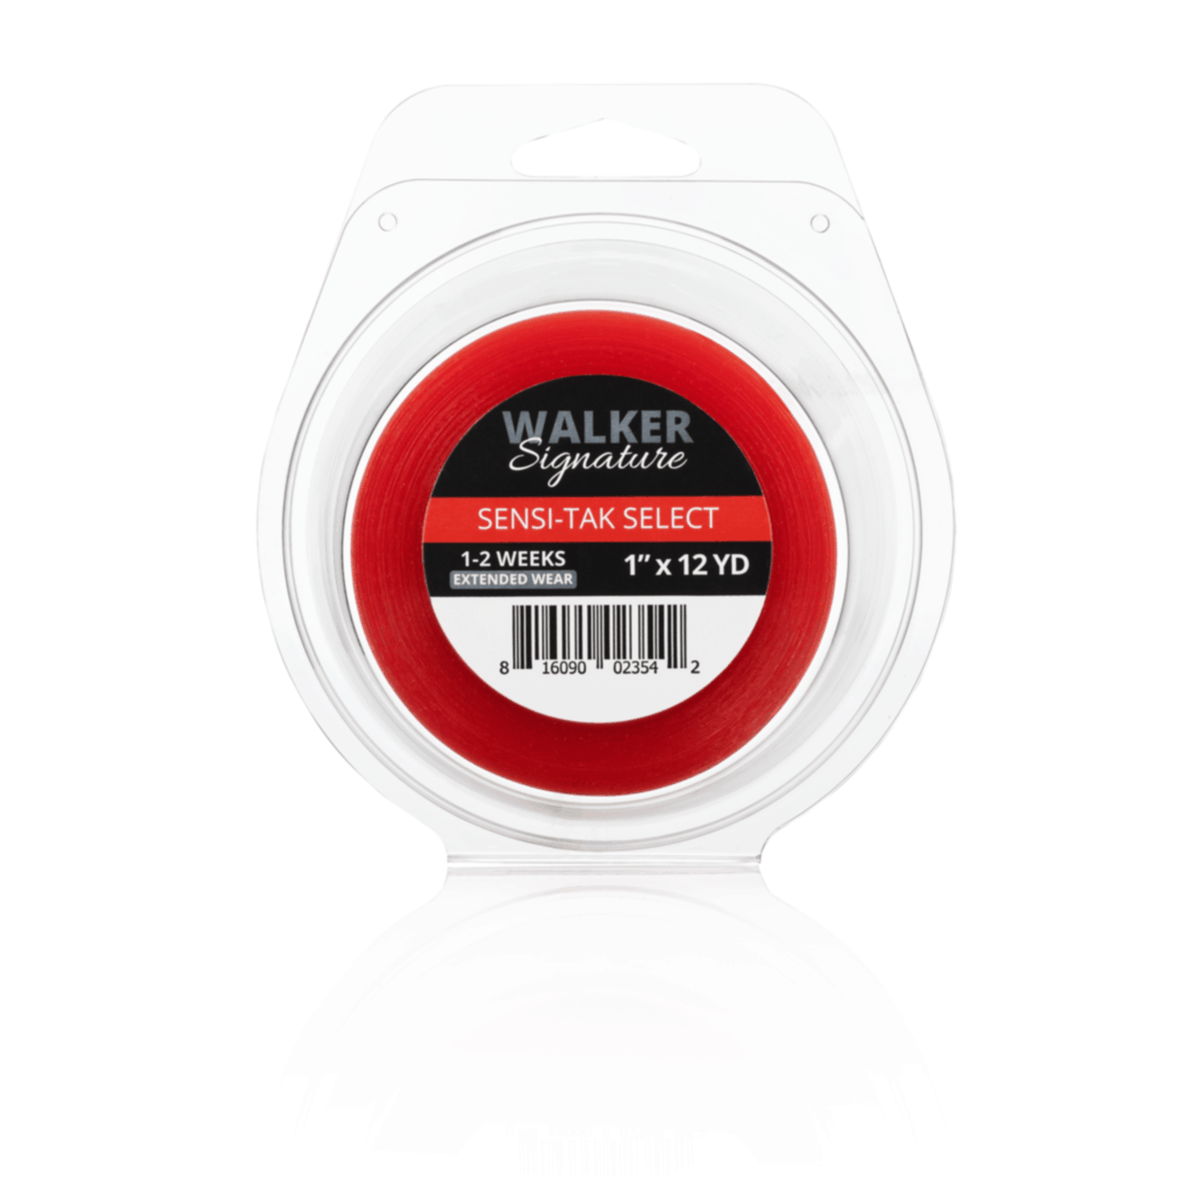 Walker Signature Sensi-Tak Select Tape Rolls - VIP Extensions